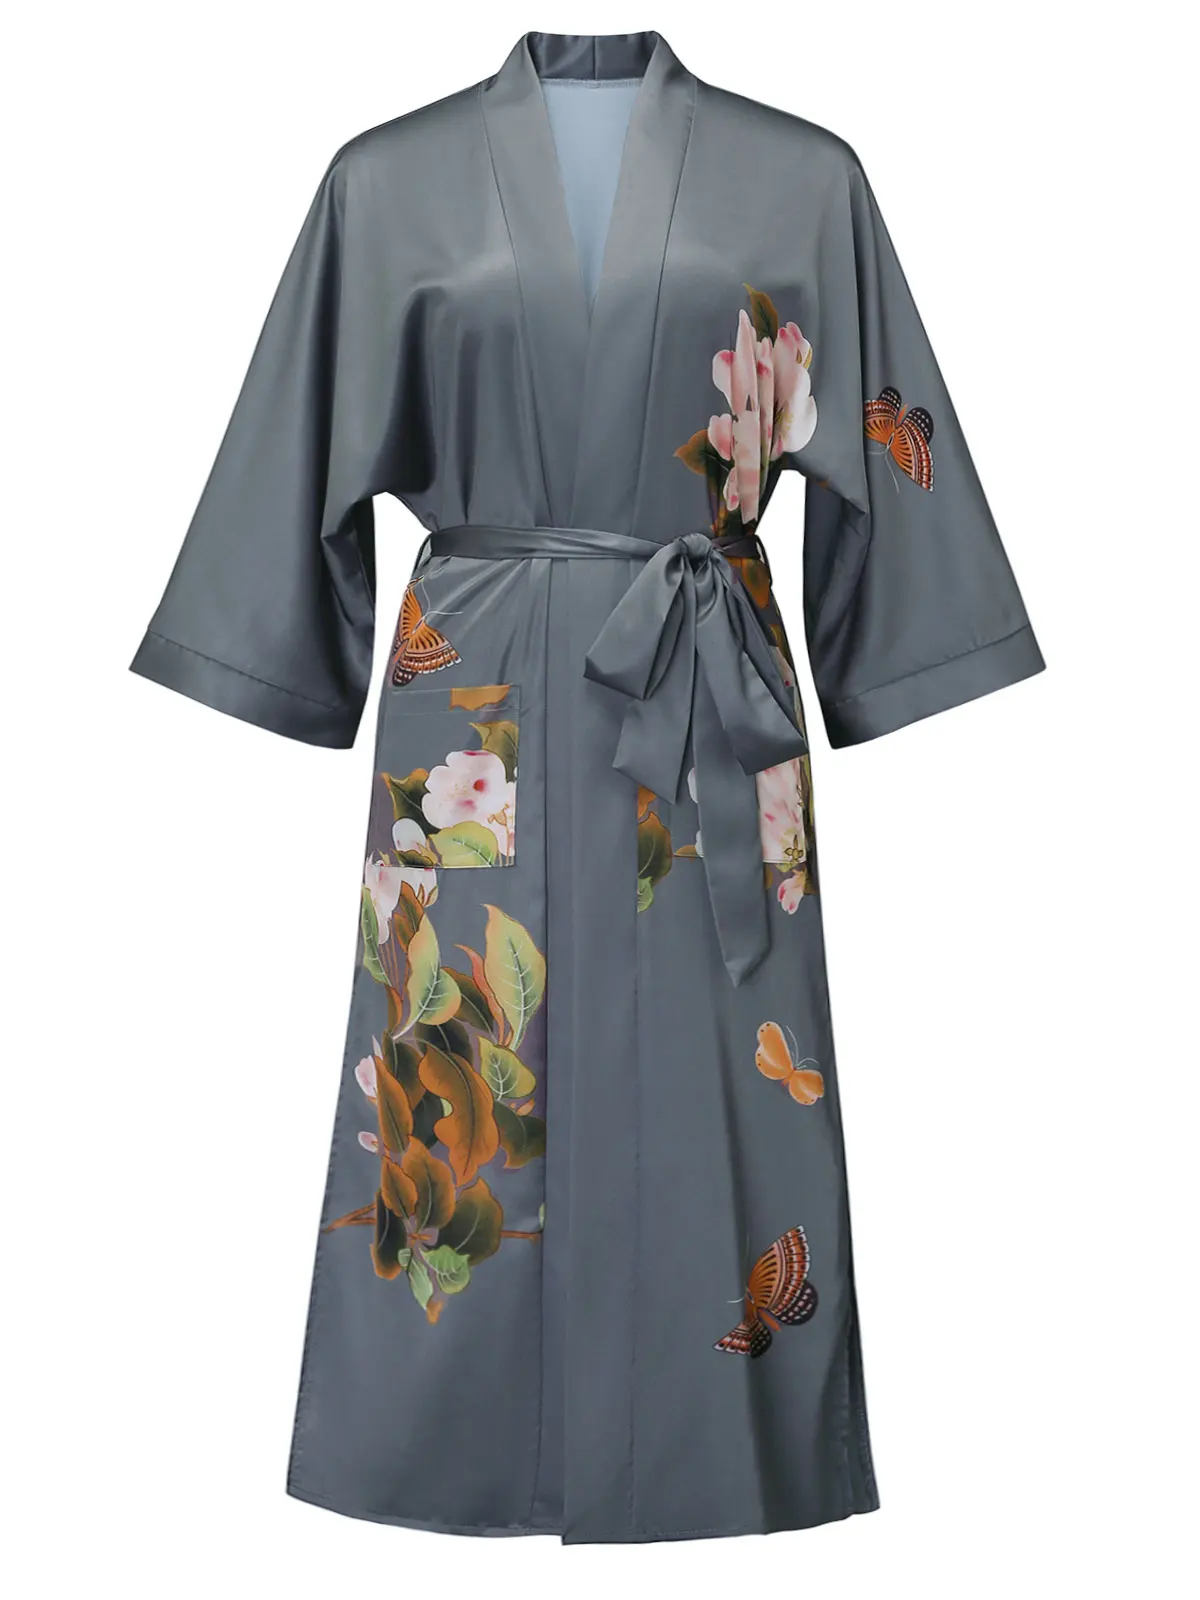 
2021 New Fashion Wholesale Night Club Emberlished Boho Kimono Robes with Fringed Hem Women Silk Kimono Robe Pajamas Customize 